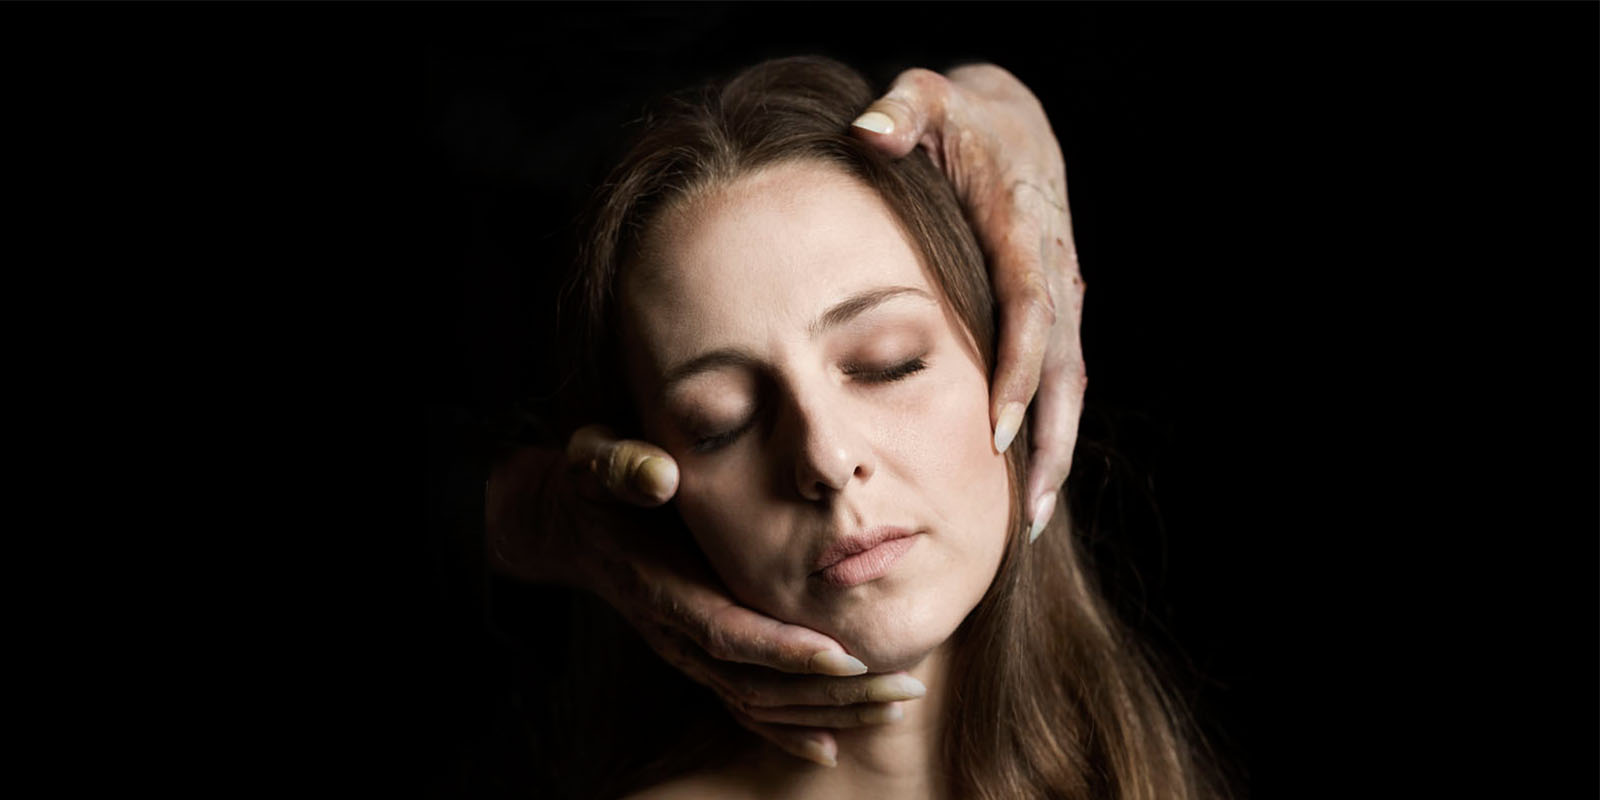 Kampanjbild Dom blinda. Kim Theodoridou Bergquist  blundar och två knotiga händer med långa naglar tar om hennes ansikte bakifrån.